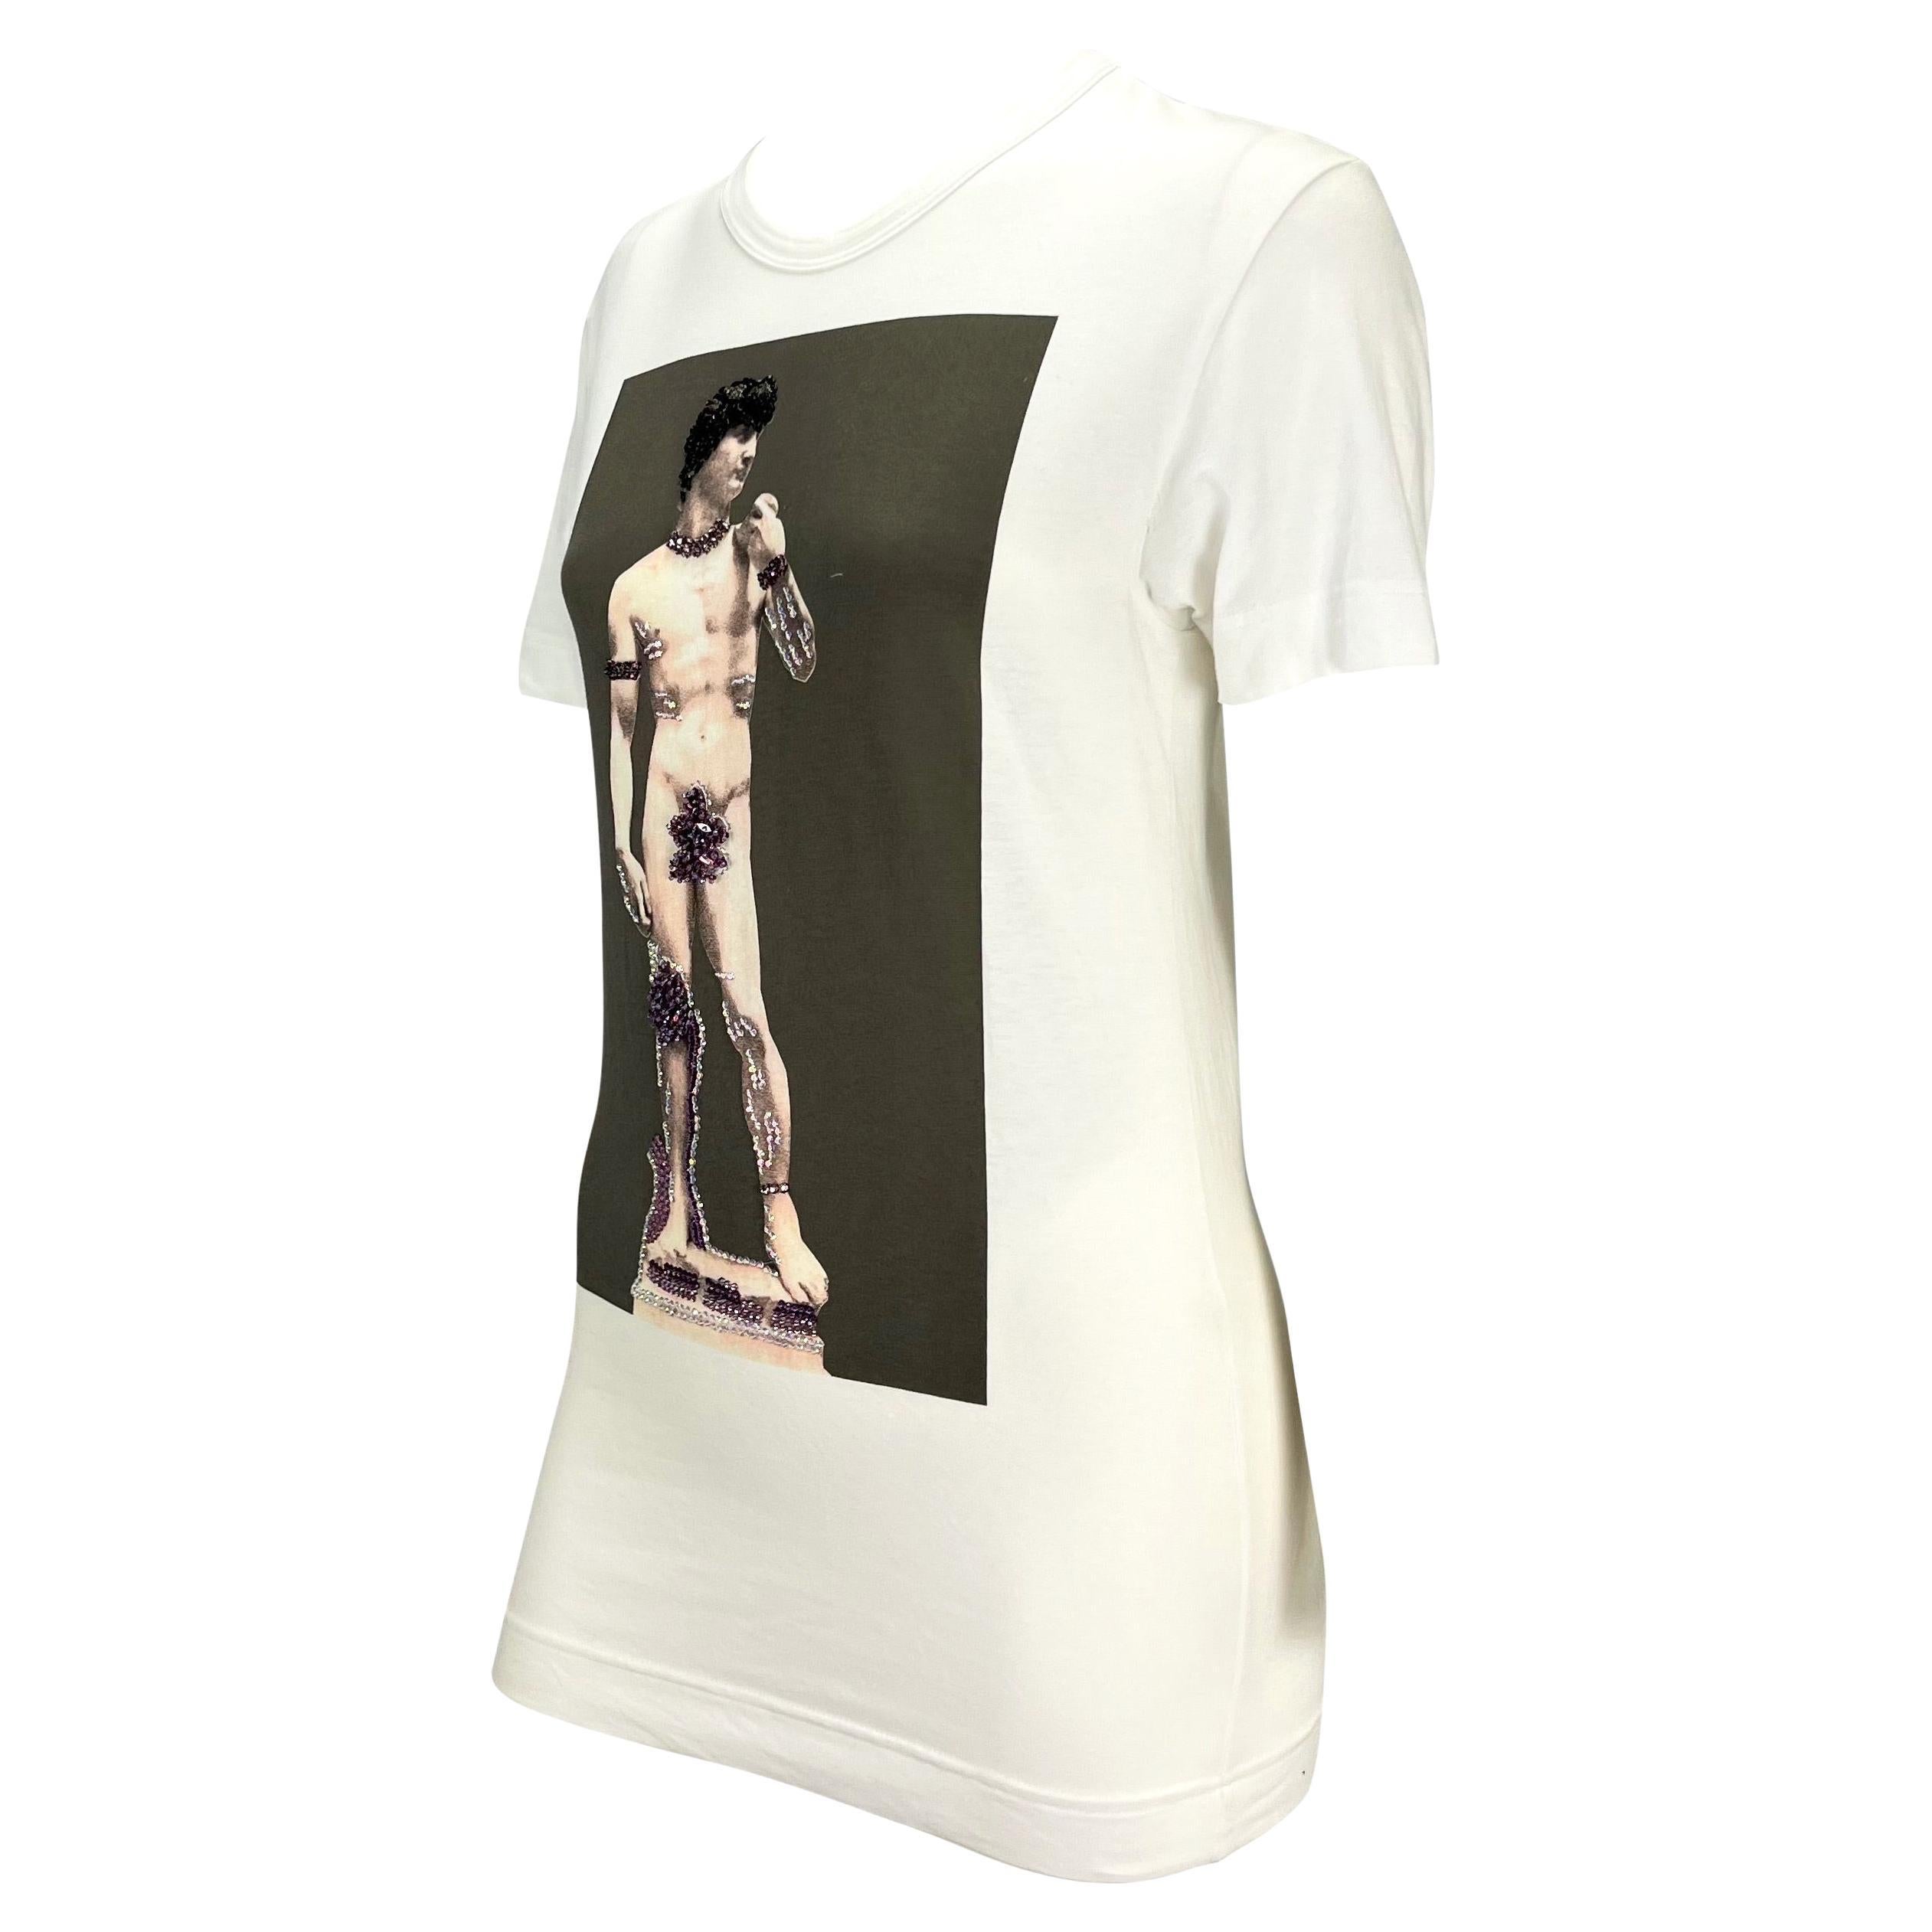 Ich präsentiere ein fabelhaftes bedrucktes T-Shirt von Dolce & Gabbana. Dieses unglaubliche T-Shirt aus der Herbst/Winter-Kollektion 2001 zeigt einen Aufdruck von Michaelangelos berühmter David-Skulptur in Schwarz und Weiß. Der Aufdruck ist mit